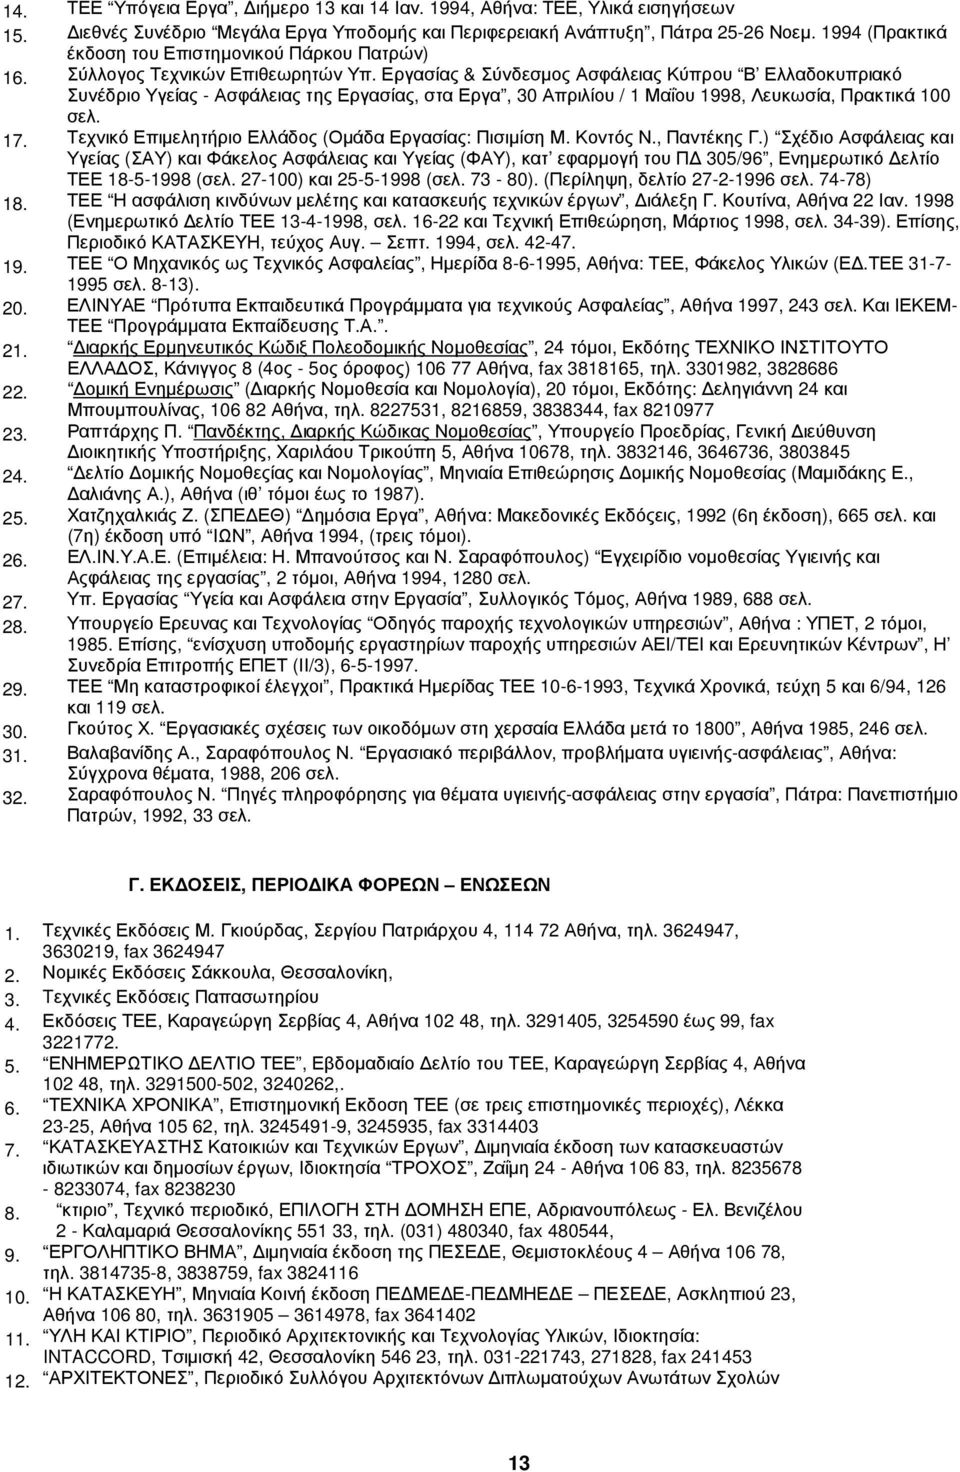 Εργασίας & Σύνδεσµος Ασφάλειας Κύπρου Β Ελλαδοκυπριακό Συνέδριο Υγείας - Ασφάλειας της Εργασίας, στα Εργα, 30 Απριλίου / 1 Μαΐου 1998, Λευκωσία, Πρακτικά 100 σελ. 17.